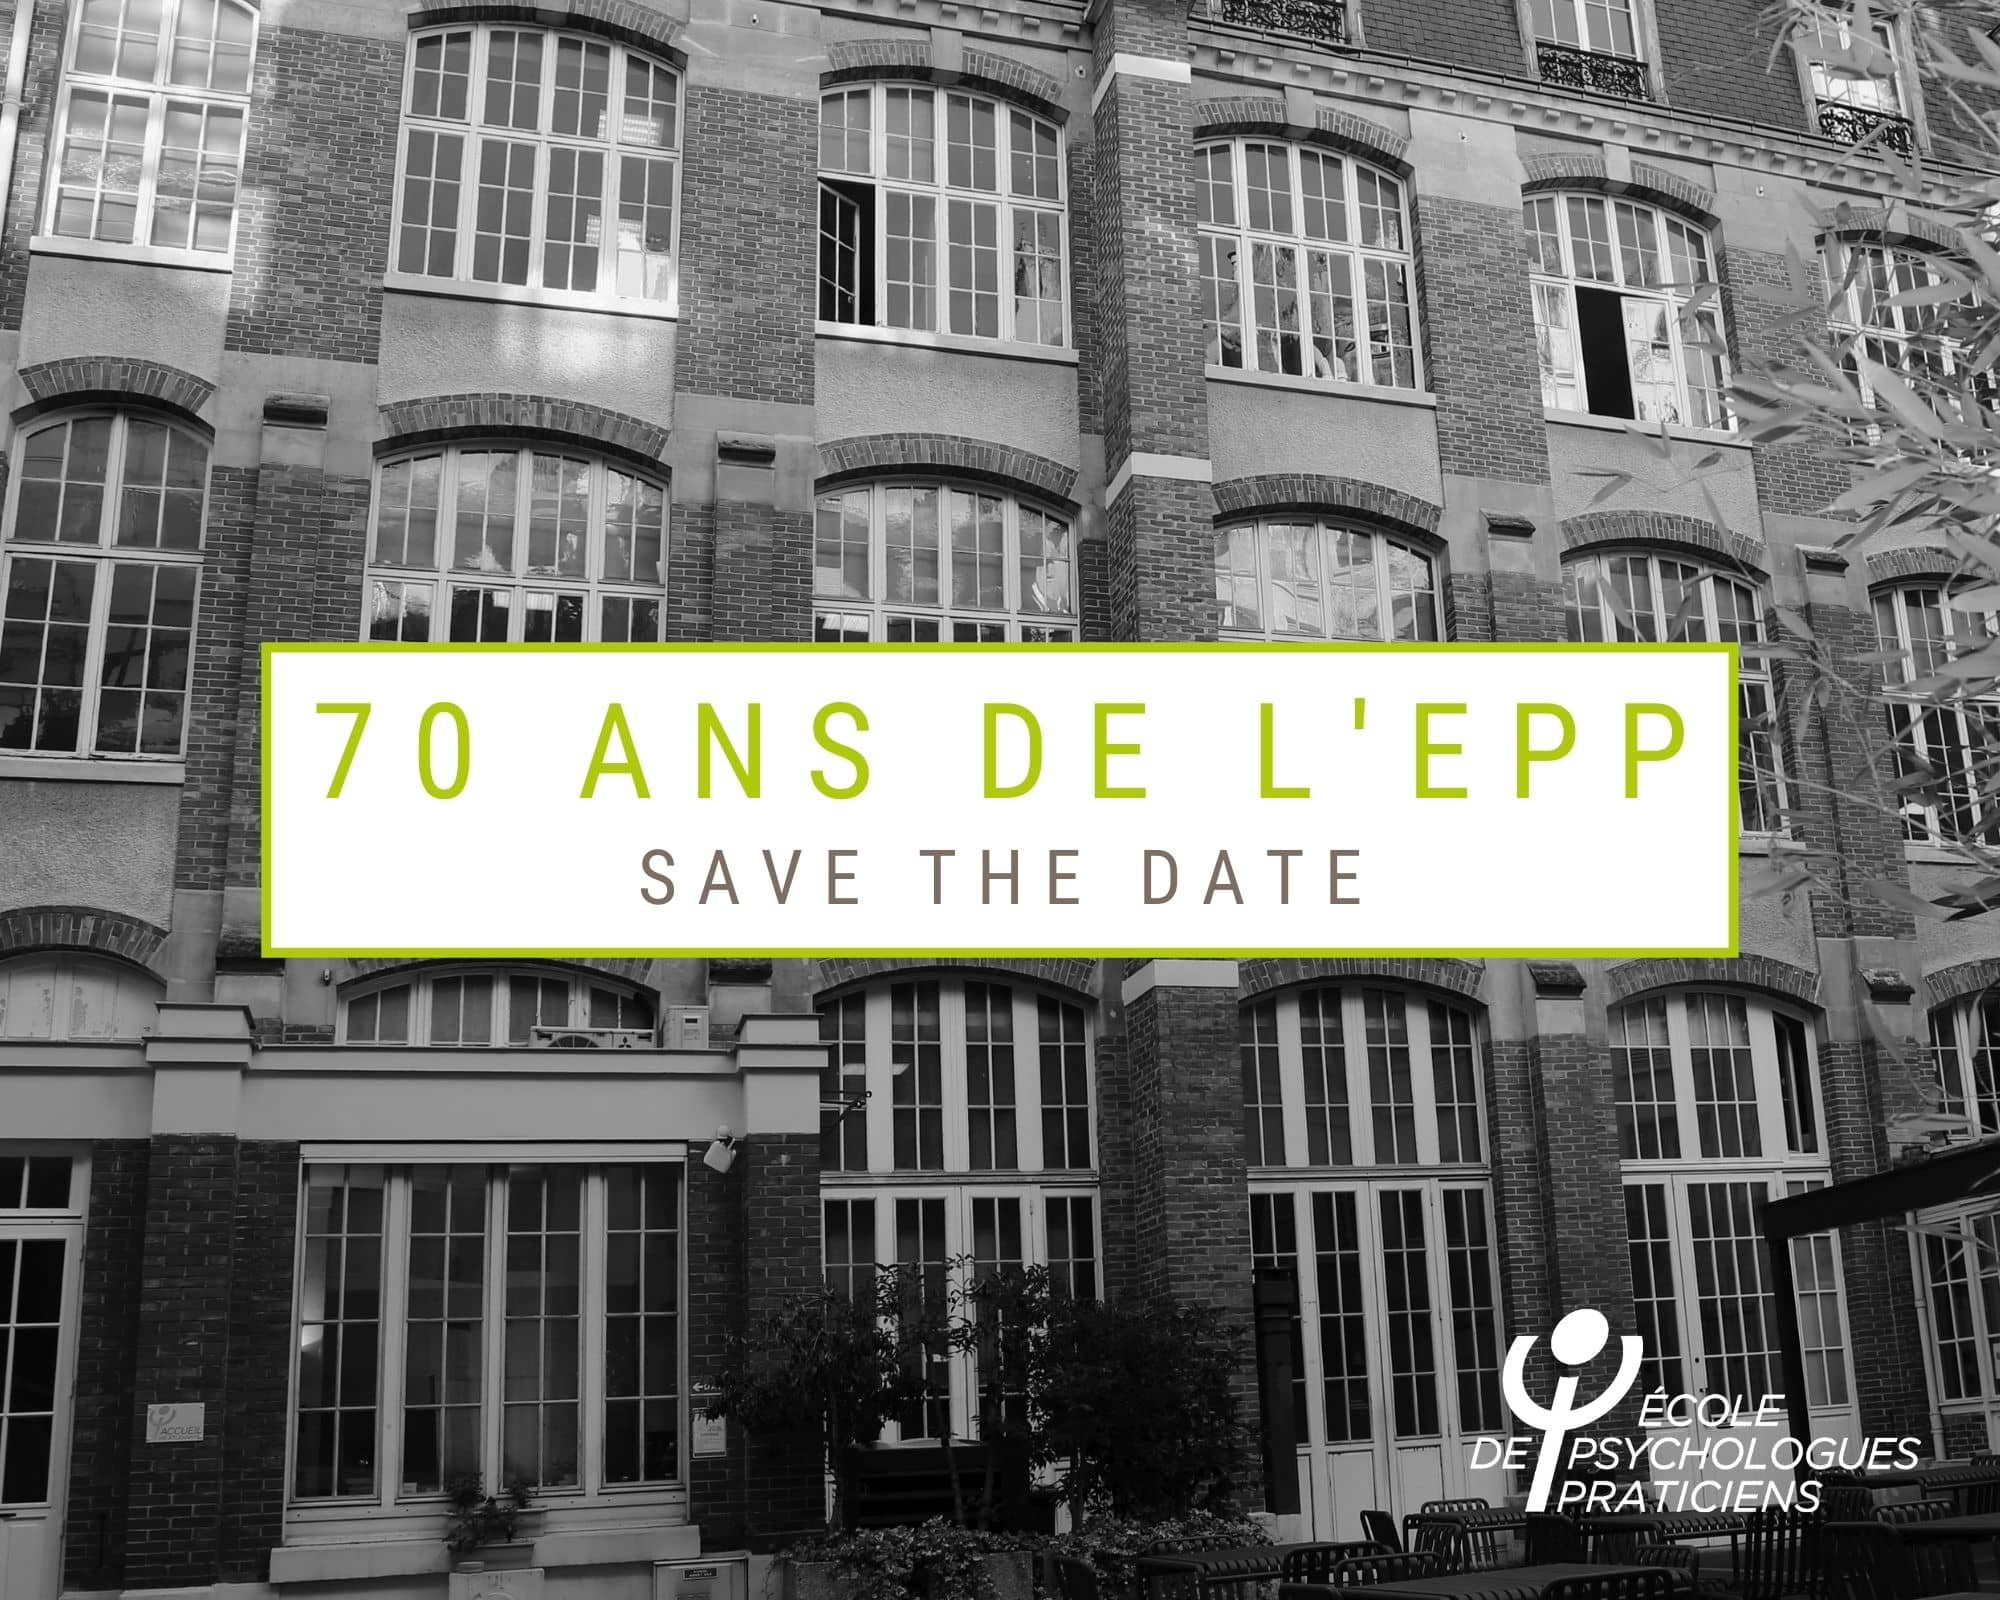 70 ans de lEPP Paris Save The Date Evenements Ecole de Psychologues Praticiens et portes ouvertes ecoles psyc